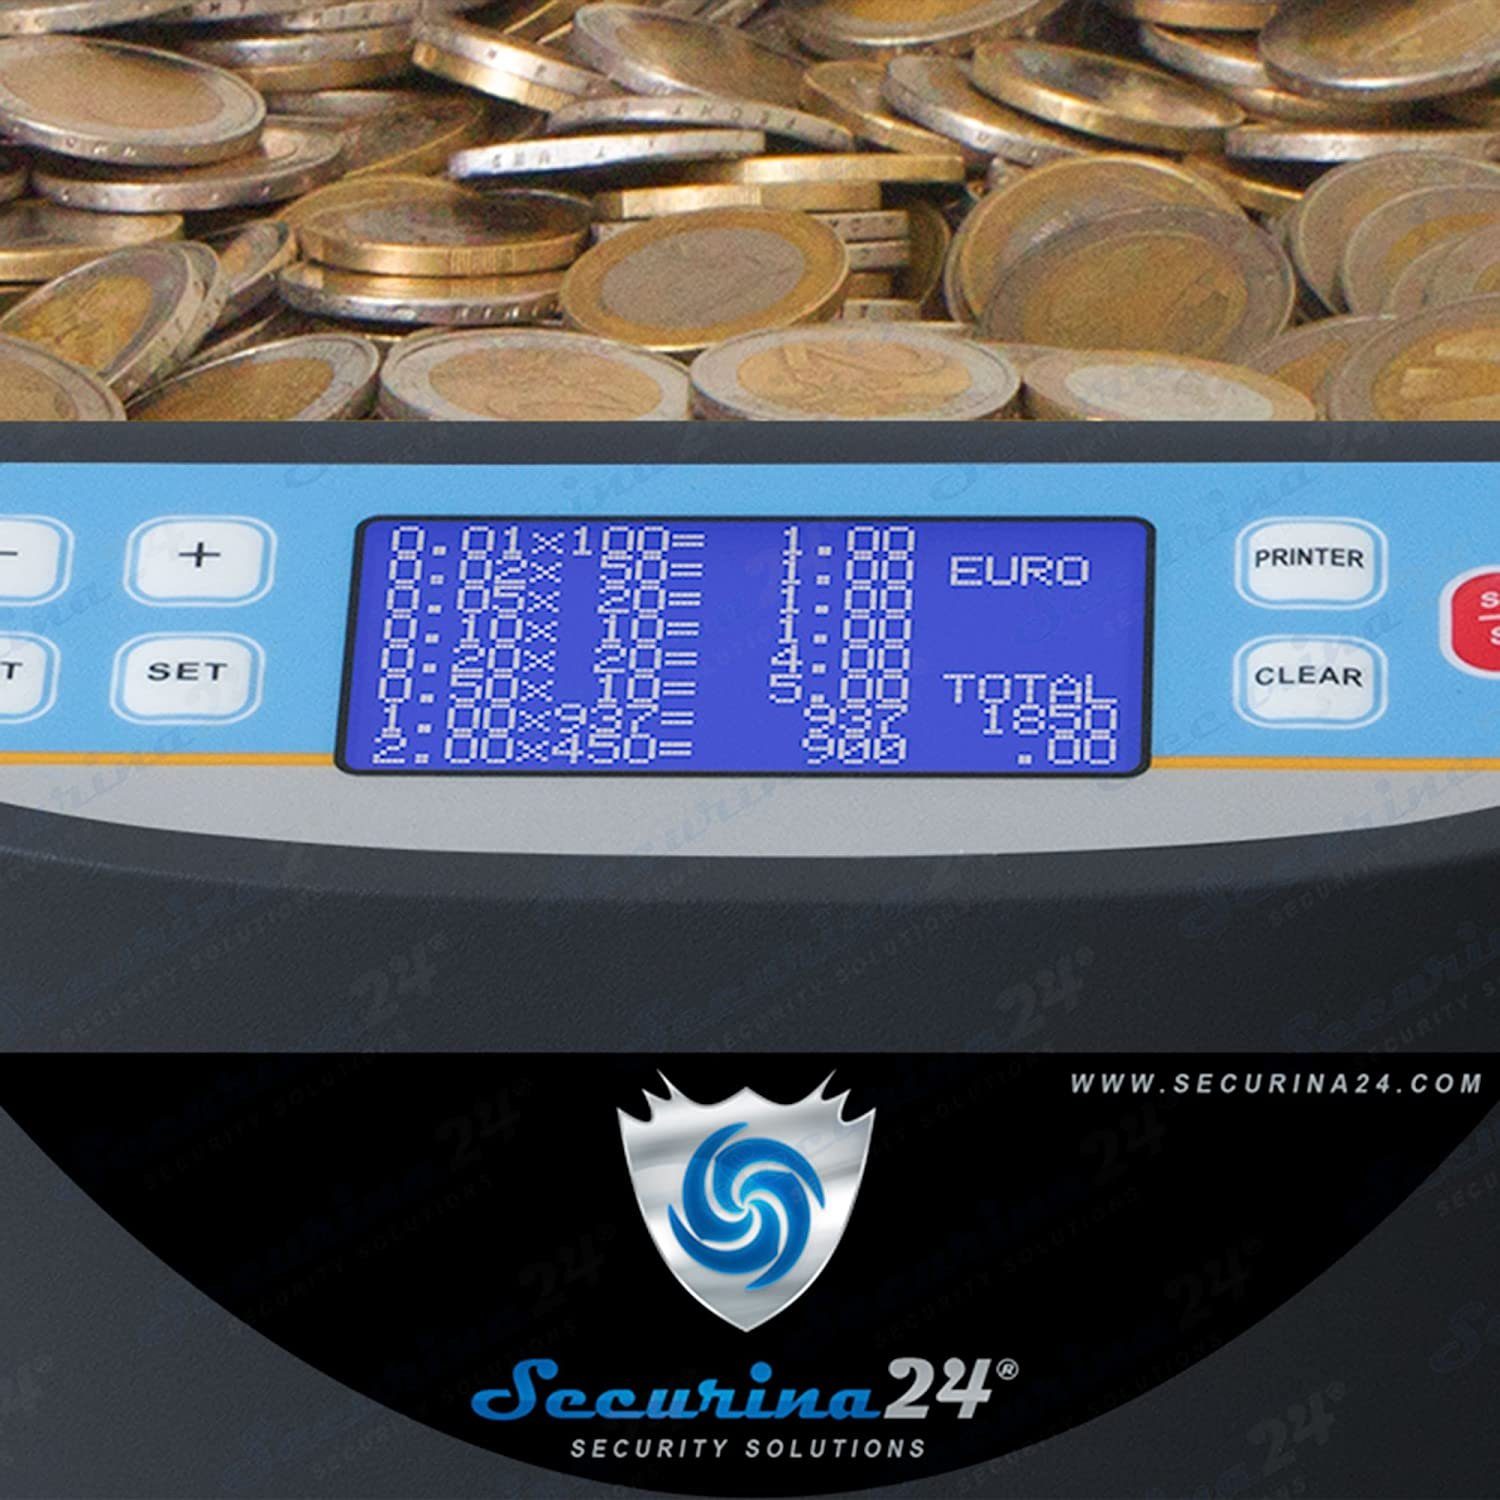 Securina24 Banknotenzähler SR-1850 Münzzähler mit Drucker